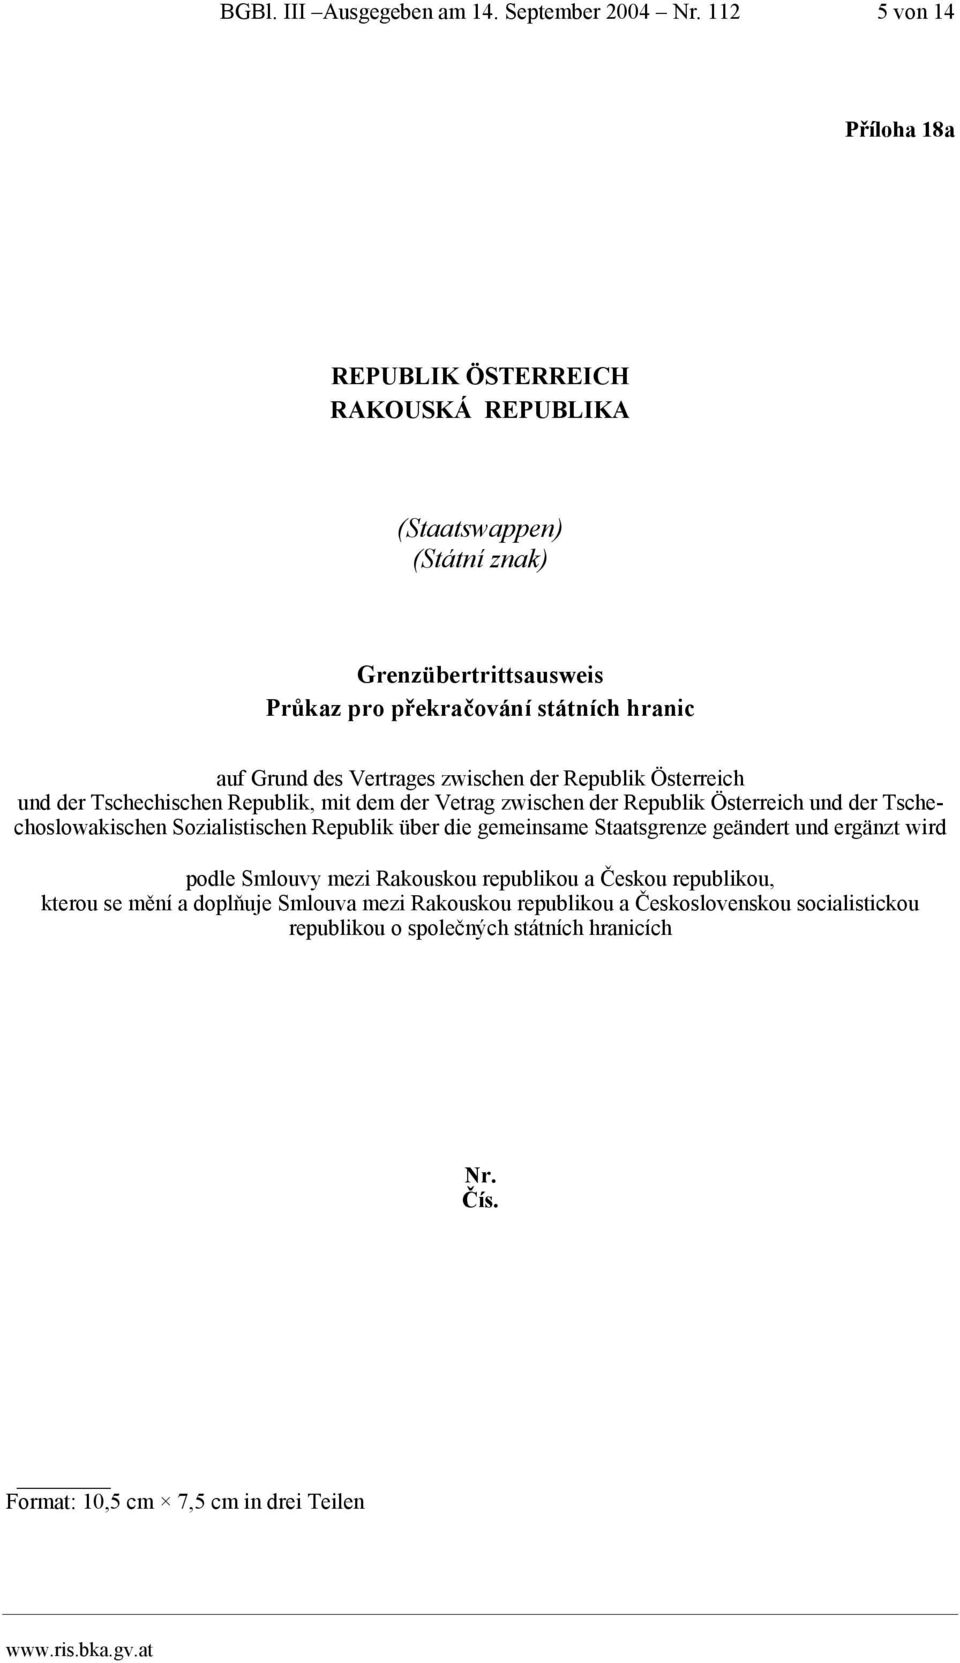 Vertrages zwischen der Republik Österreich und der Tschechischen Republik, mit dem der Vetrag zwischen der Republik Österreich und der Tschechoslowakischen Sozialistischen